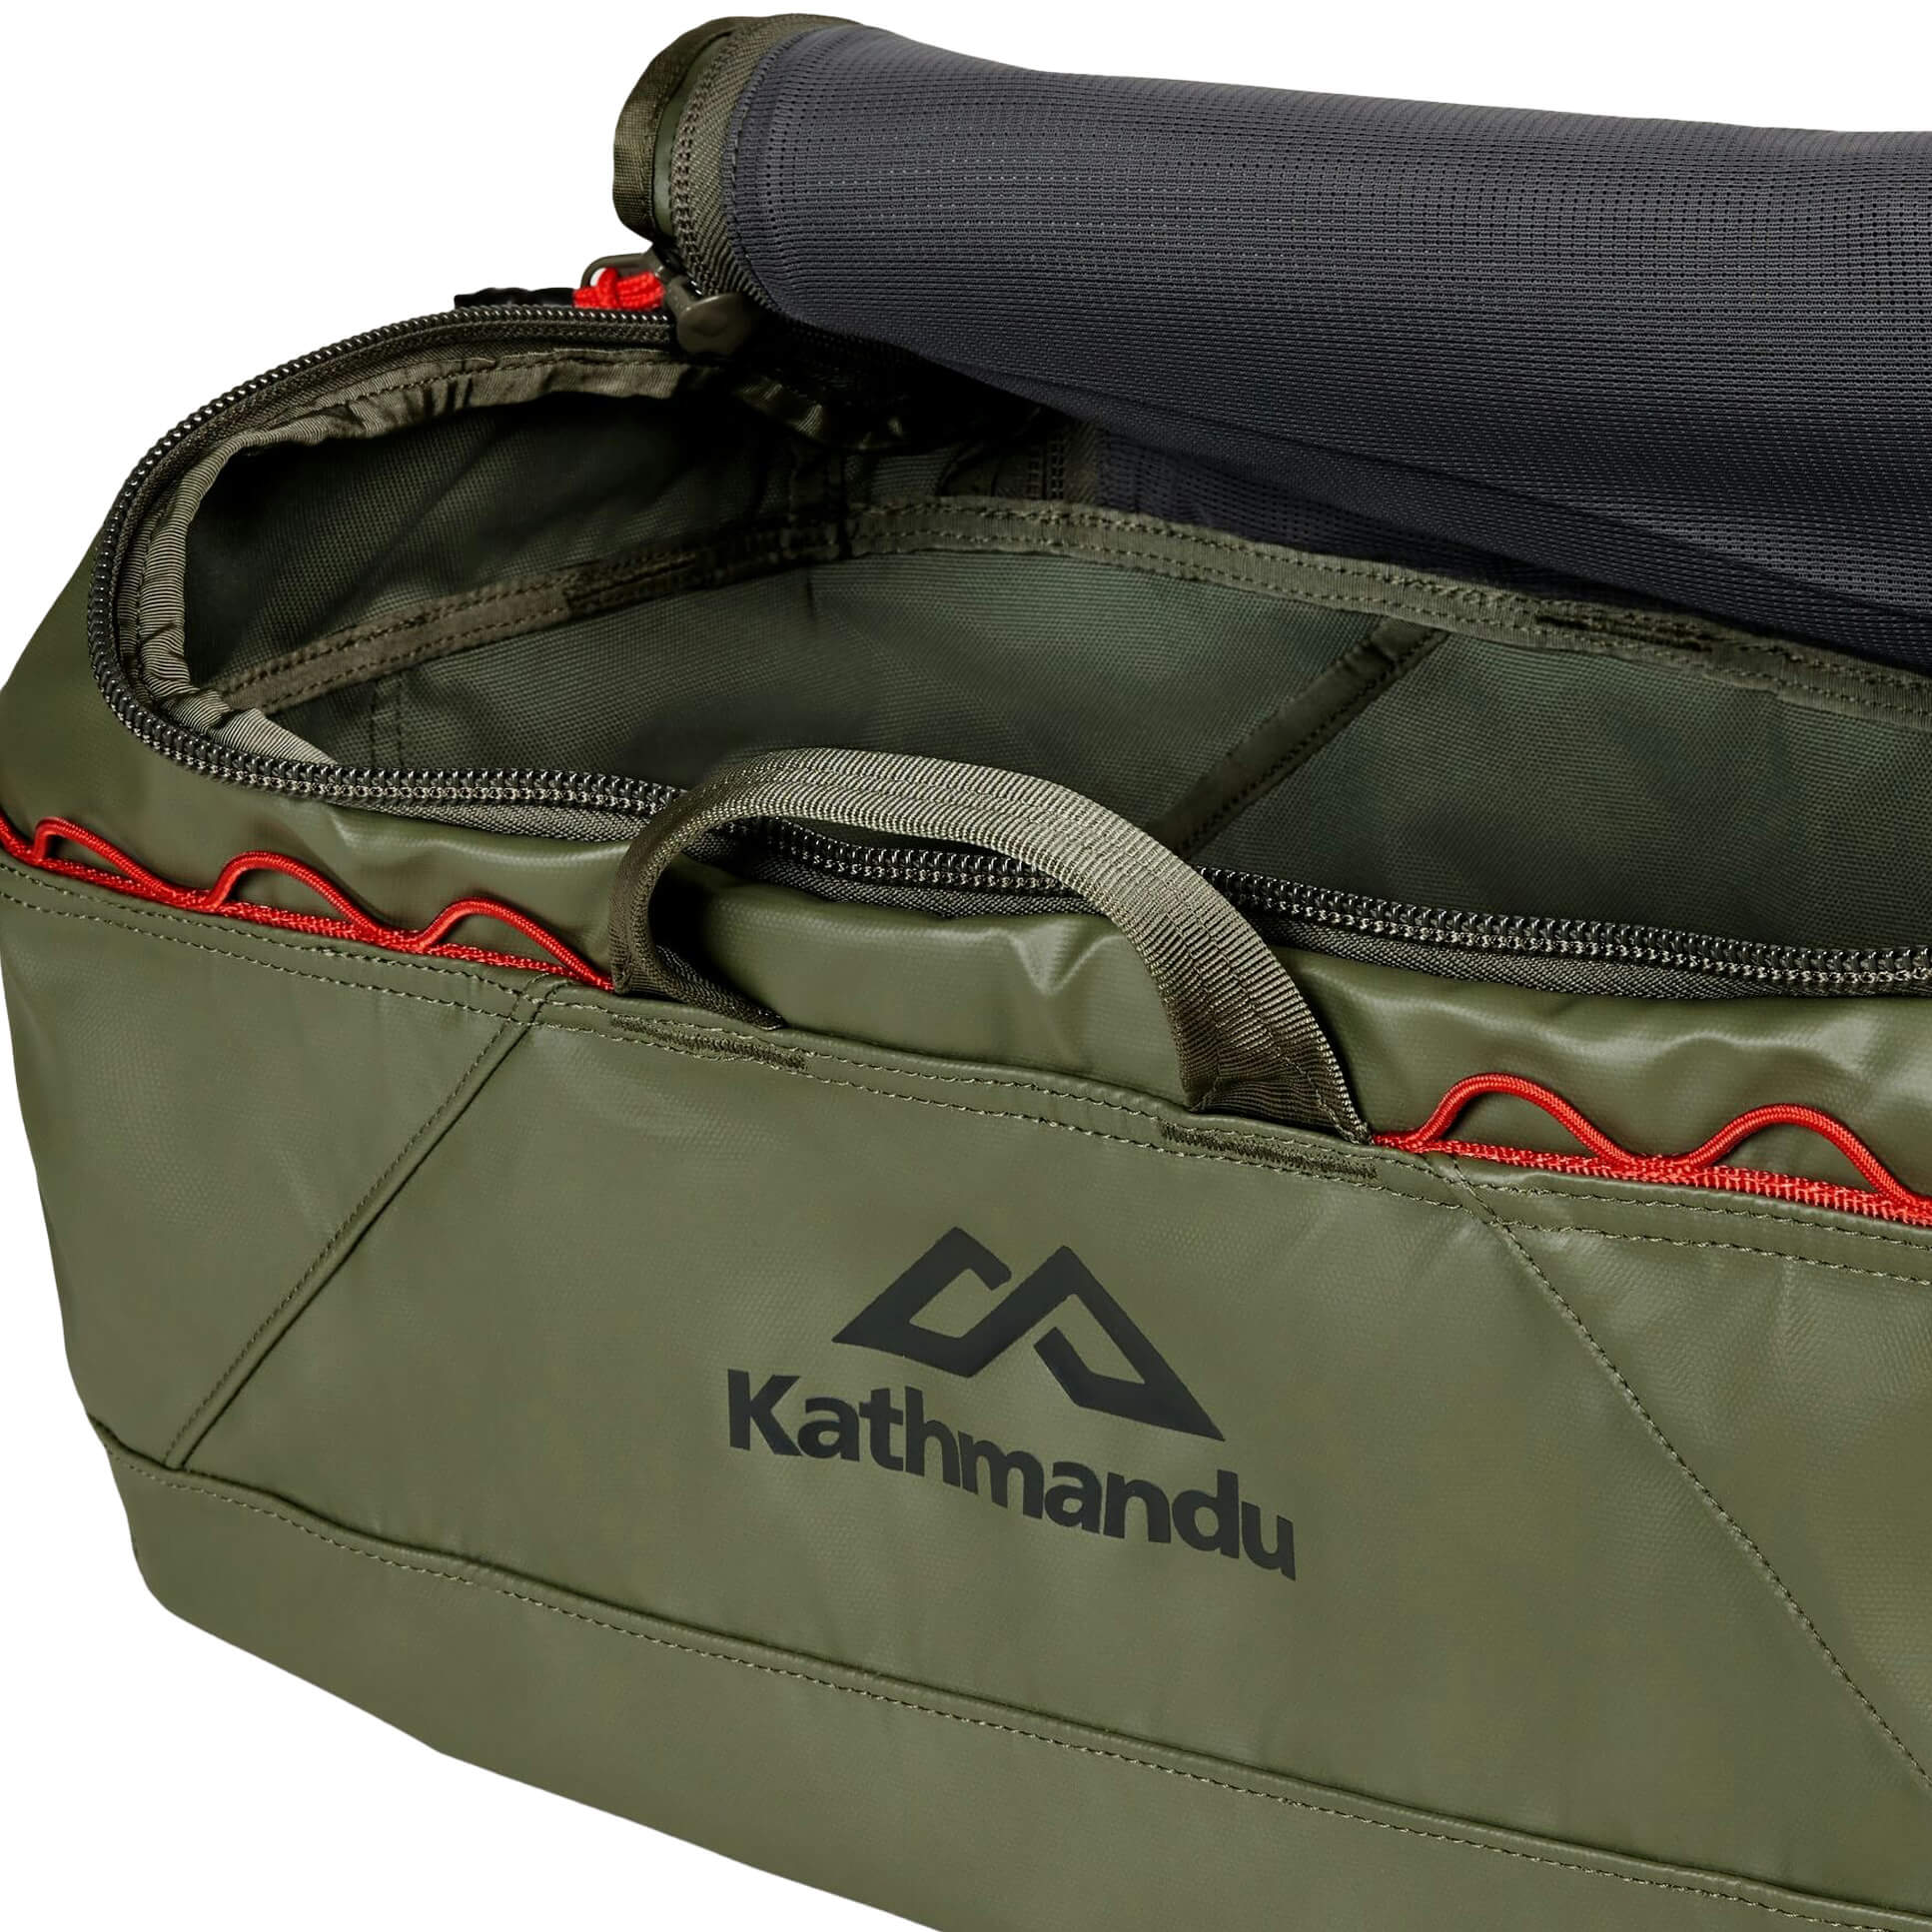 Kathmandu Indus 35 Waterproof Duffel Bag